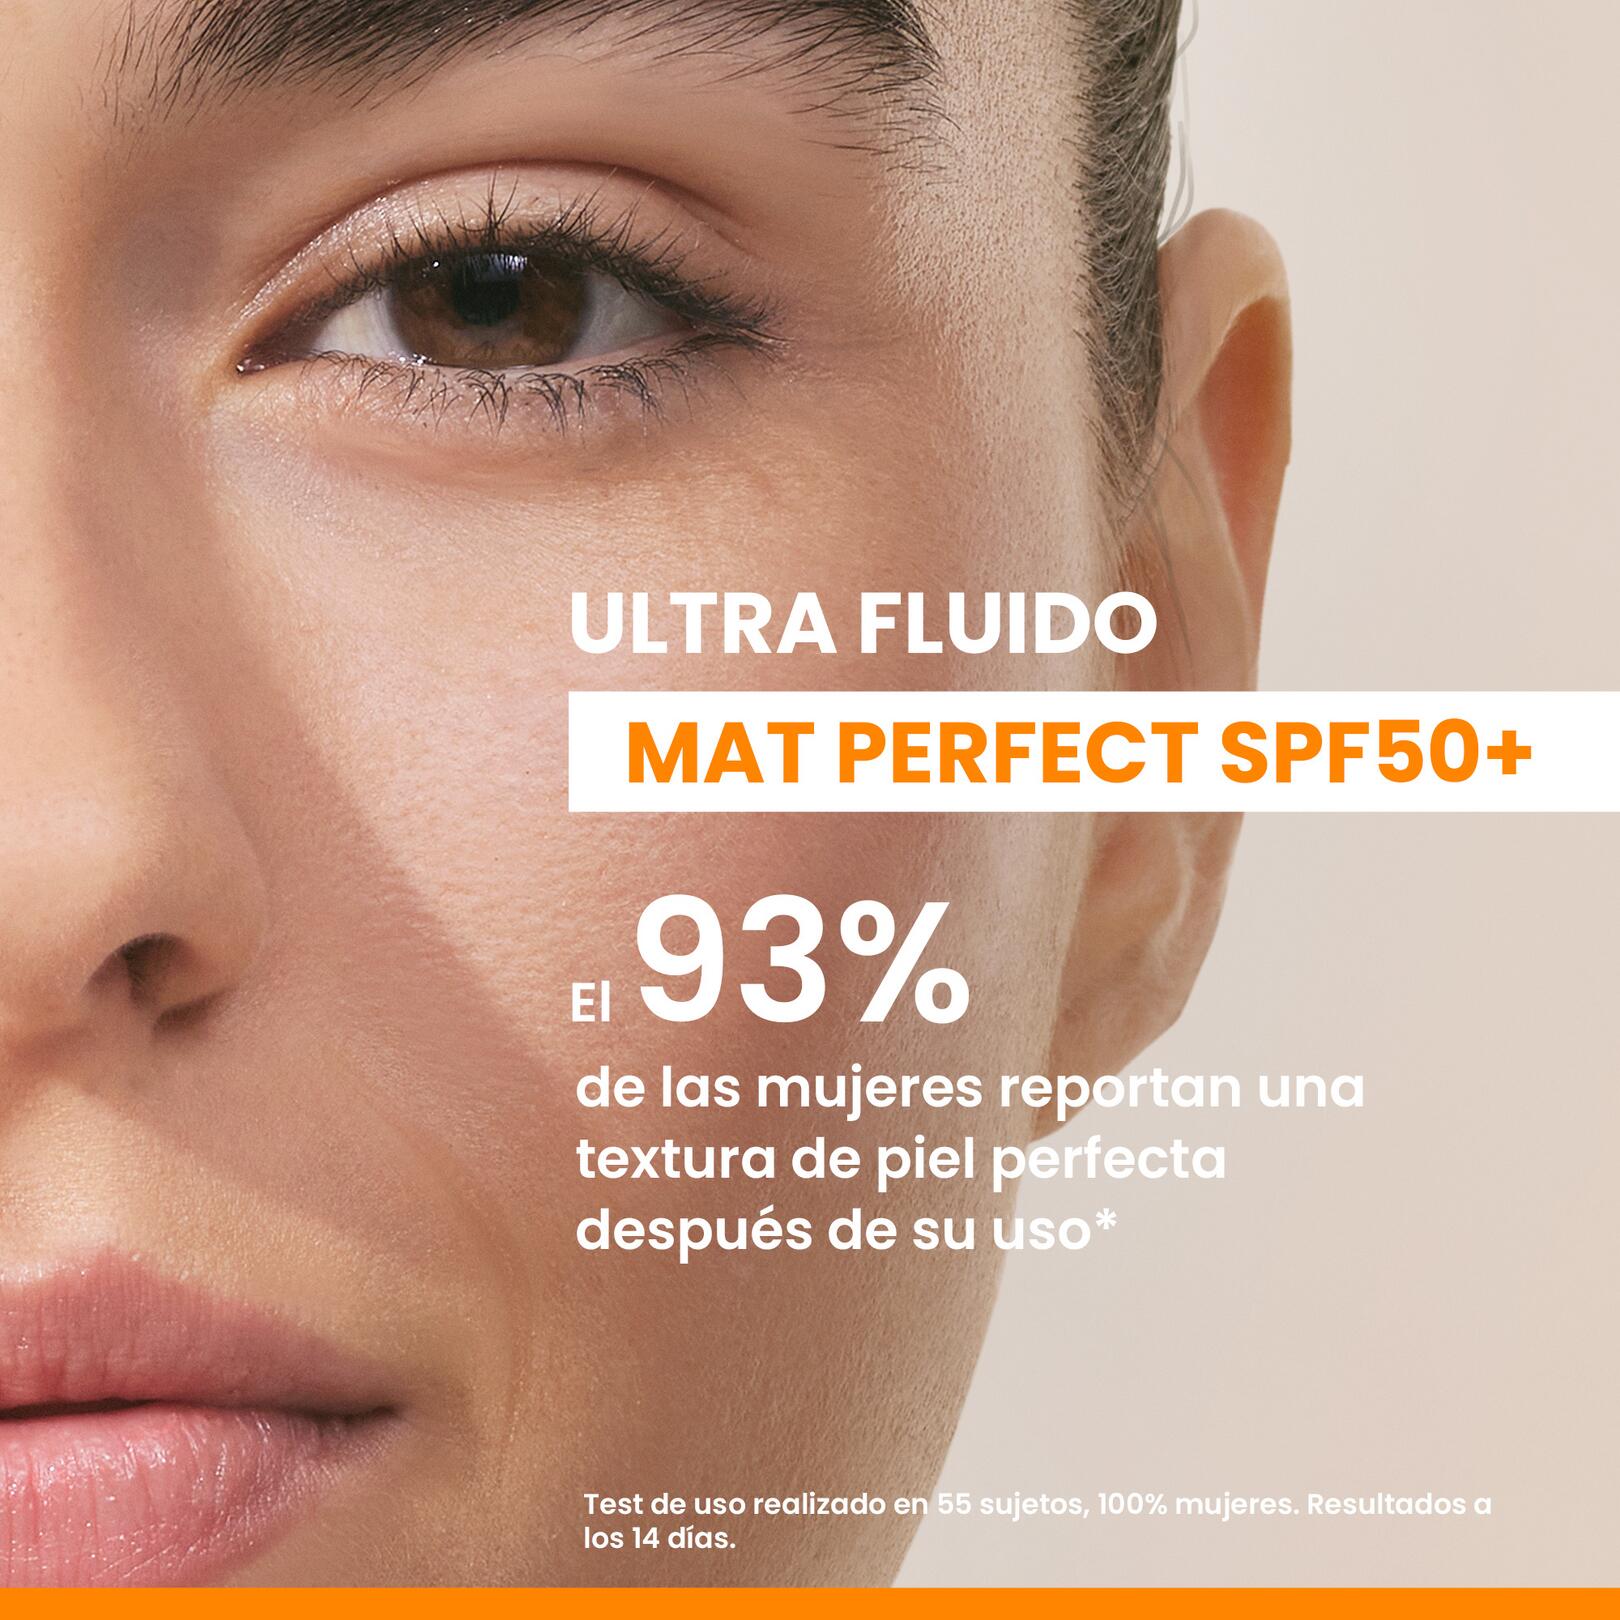 ULTRA FLUIDO MAT PERFECT SPF 50+